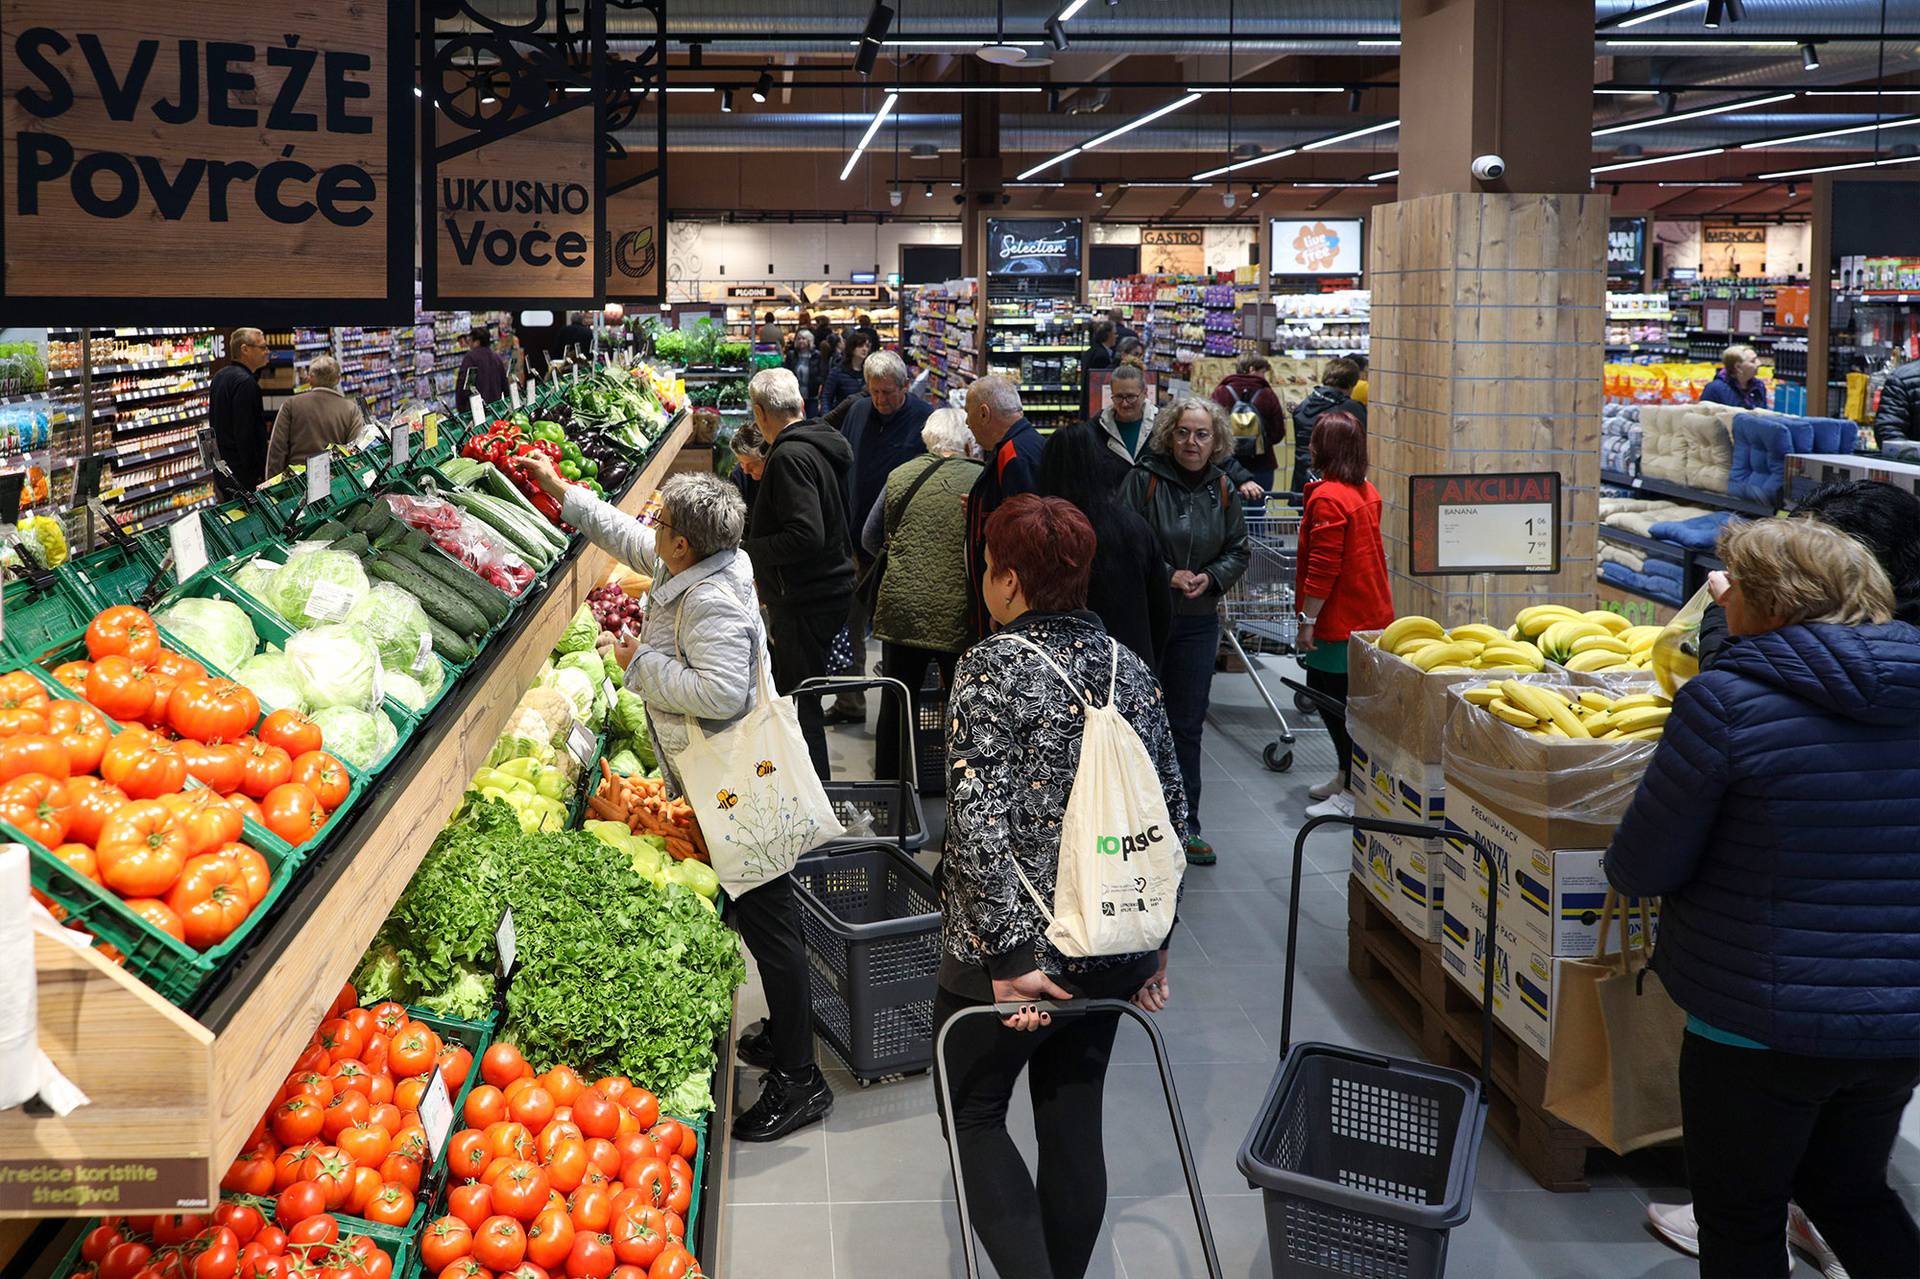 U Novskoj je otvoren novi supermarket Plodina